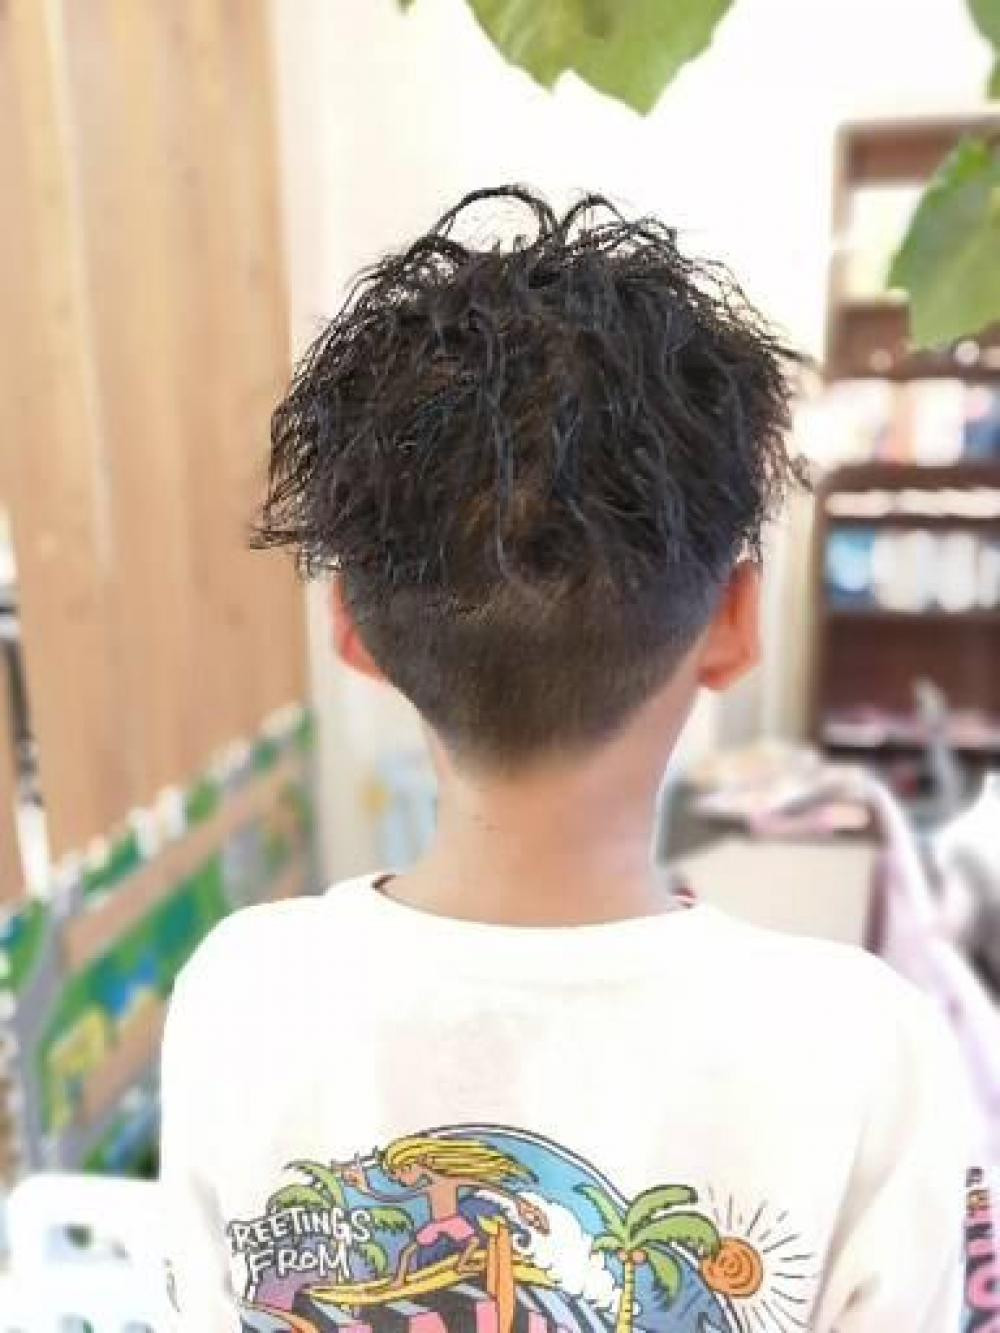 オシャレな男の子の子供カットツーブロックツイストパーマ No Again Hair Design 緑橋のヘアスタイル ヘアログ